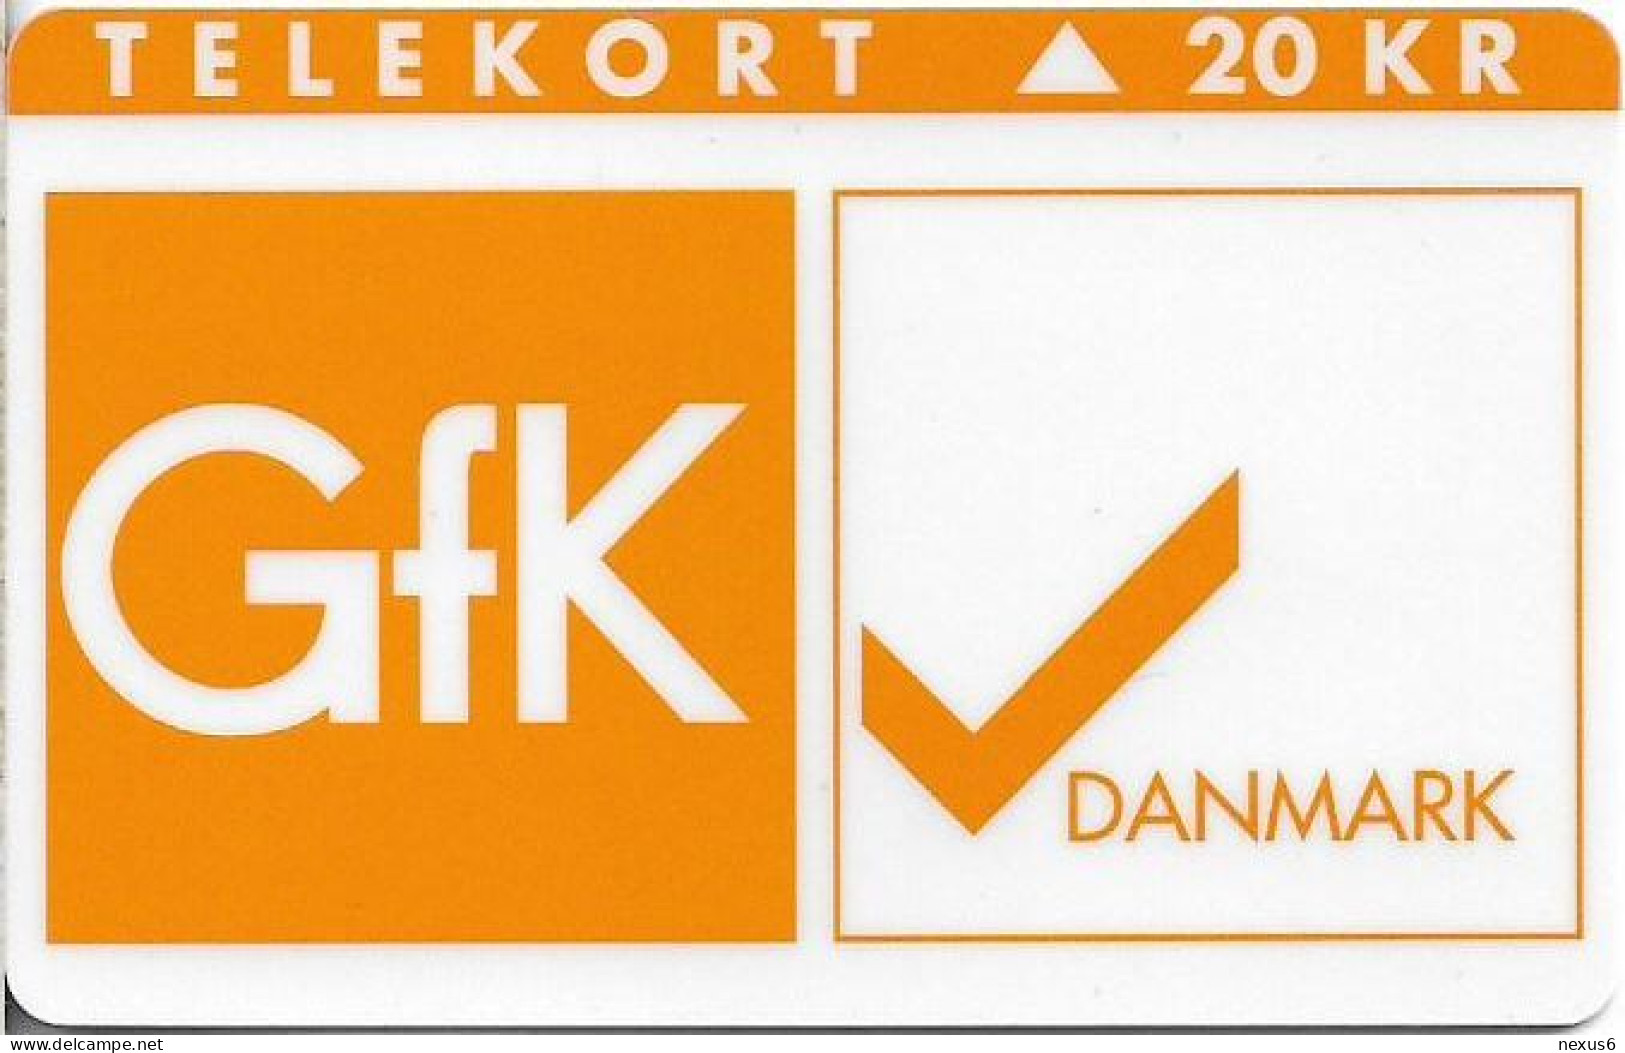 Denmark - KTAS - Gfk Danmark - TDKP134B (Cn. 1050) - 12.1995, 1.300ex, 20kr, Used - Danemark